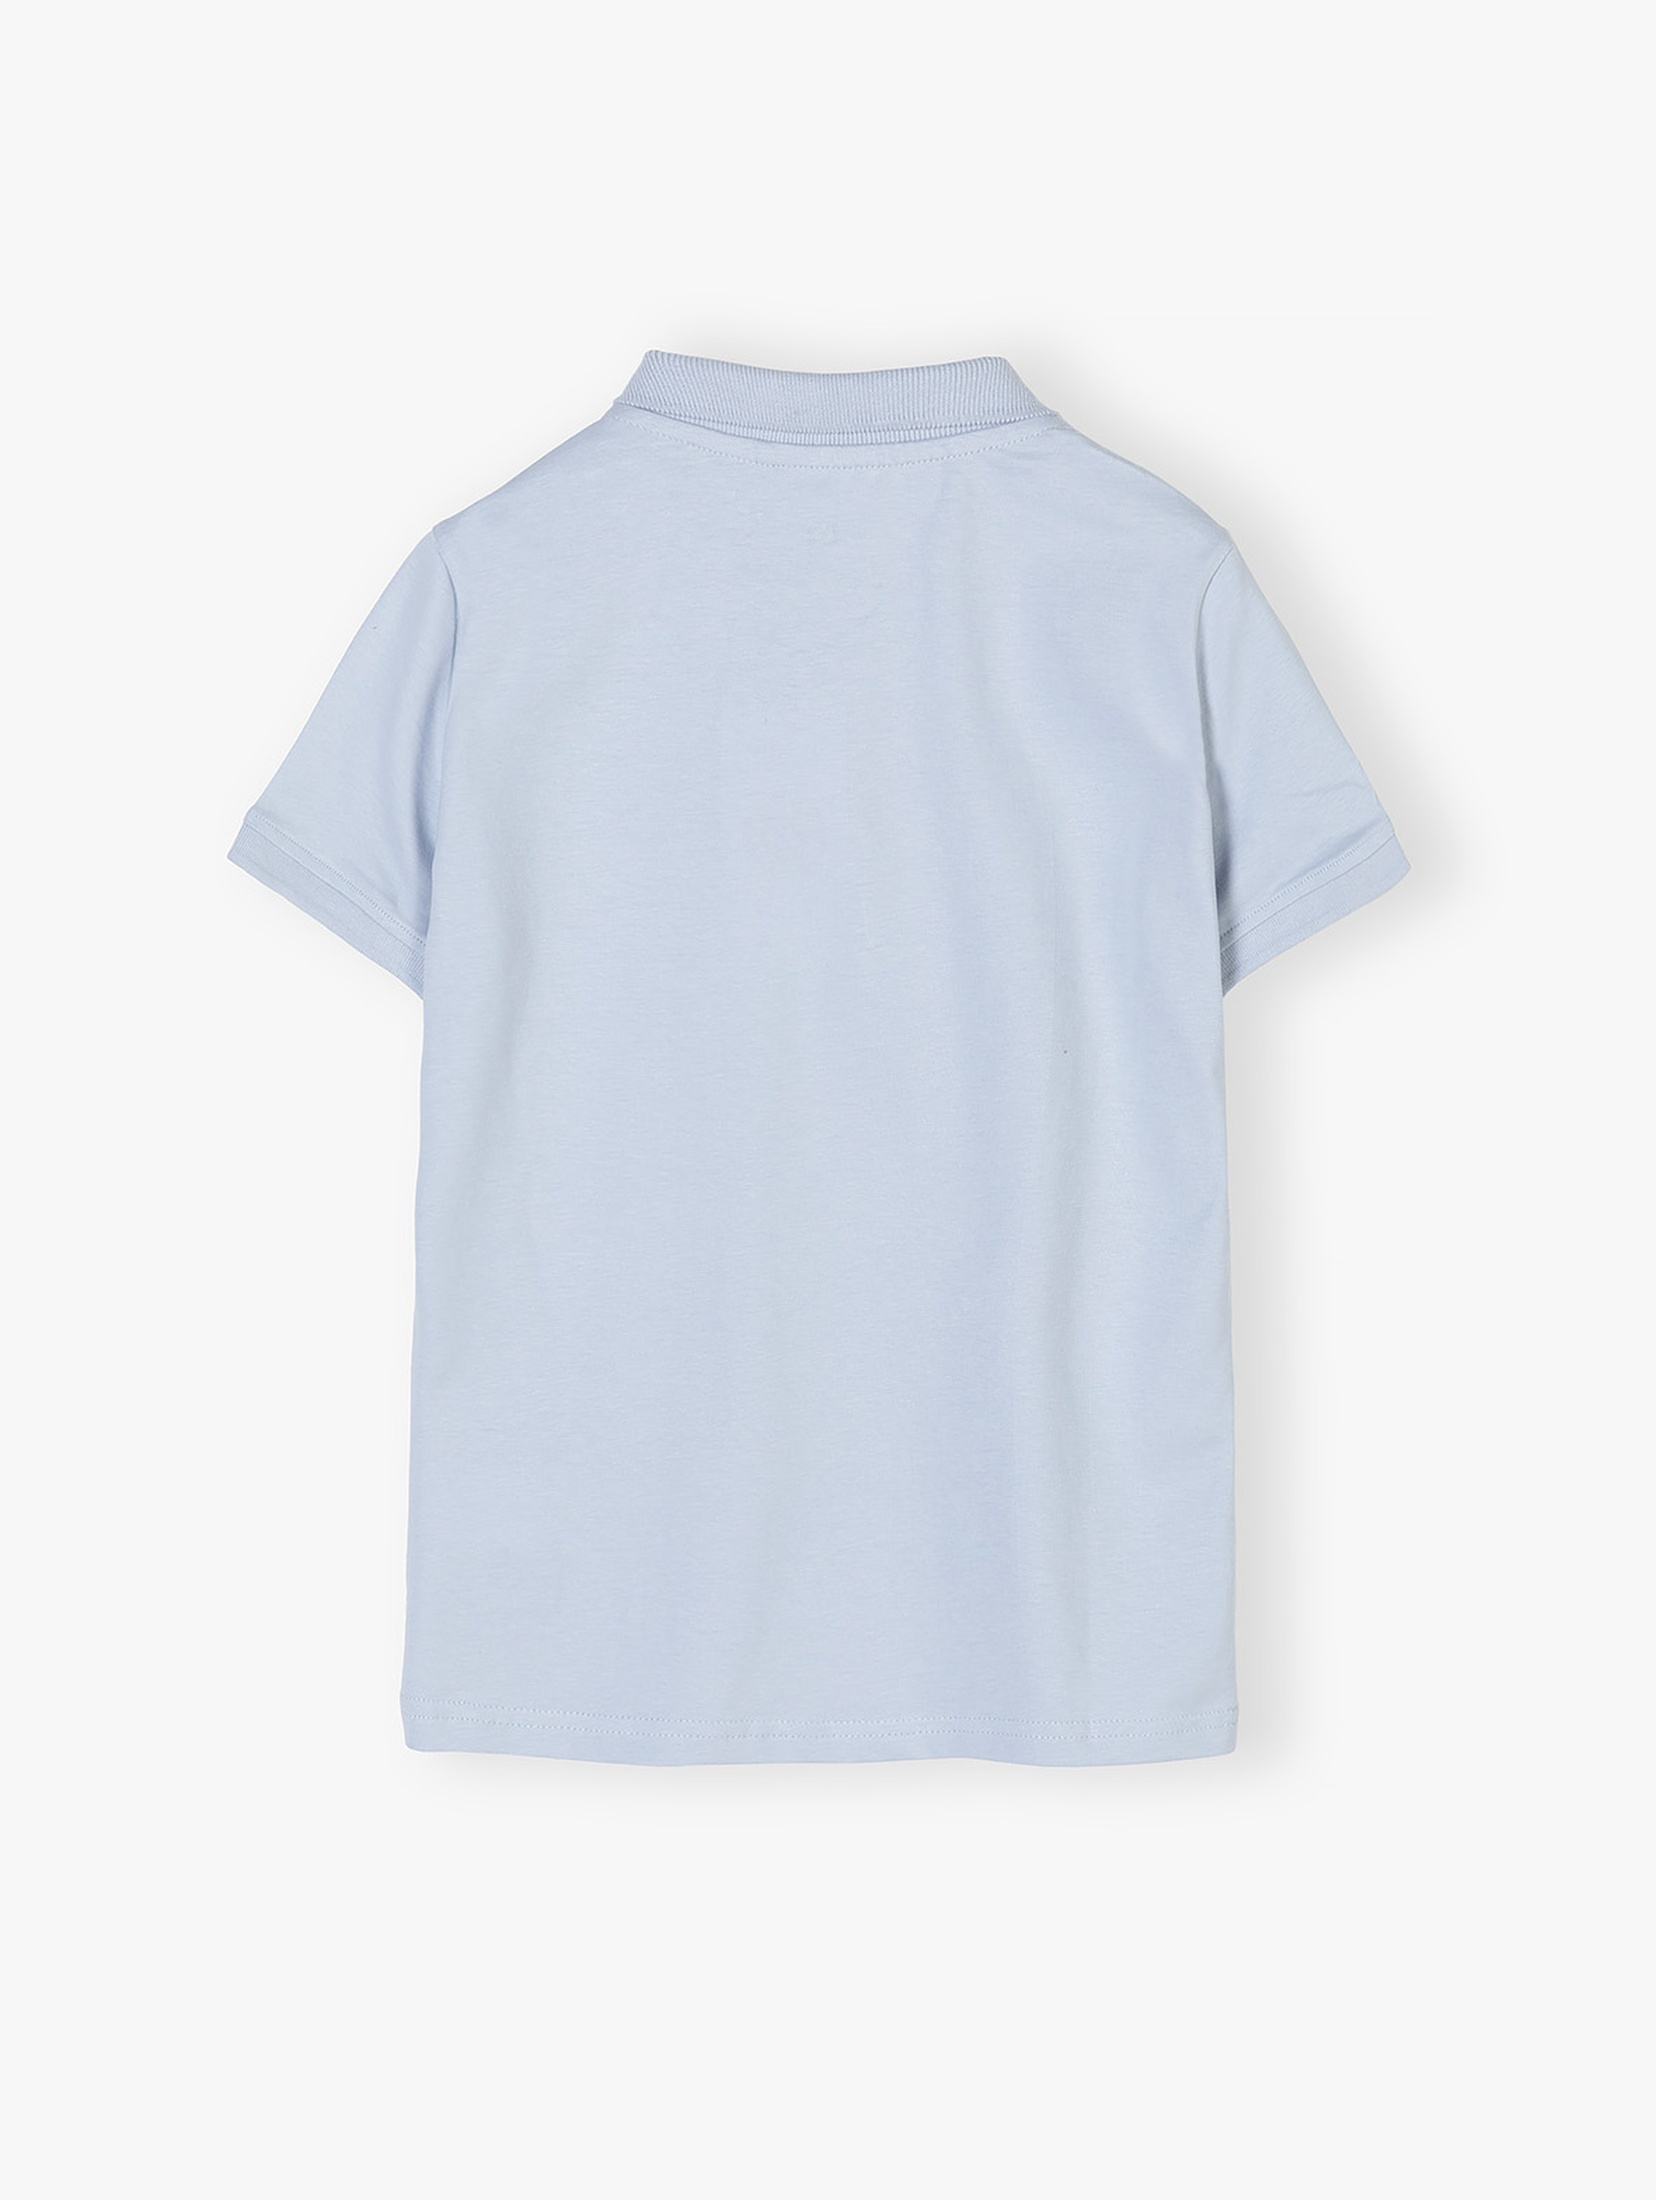 Niebieska bluzka polo dla chłopca z bawełny